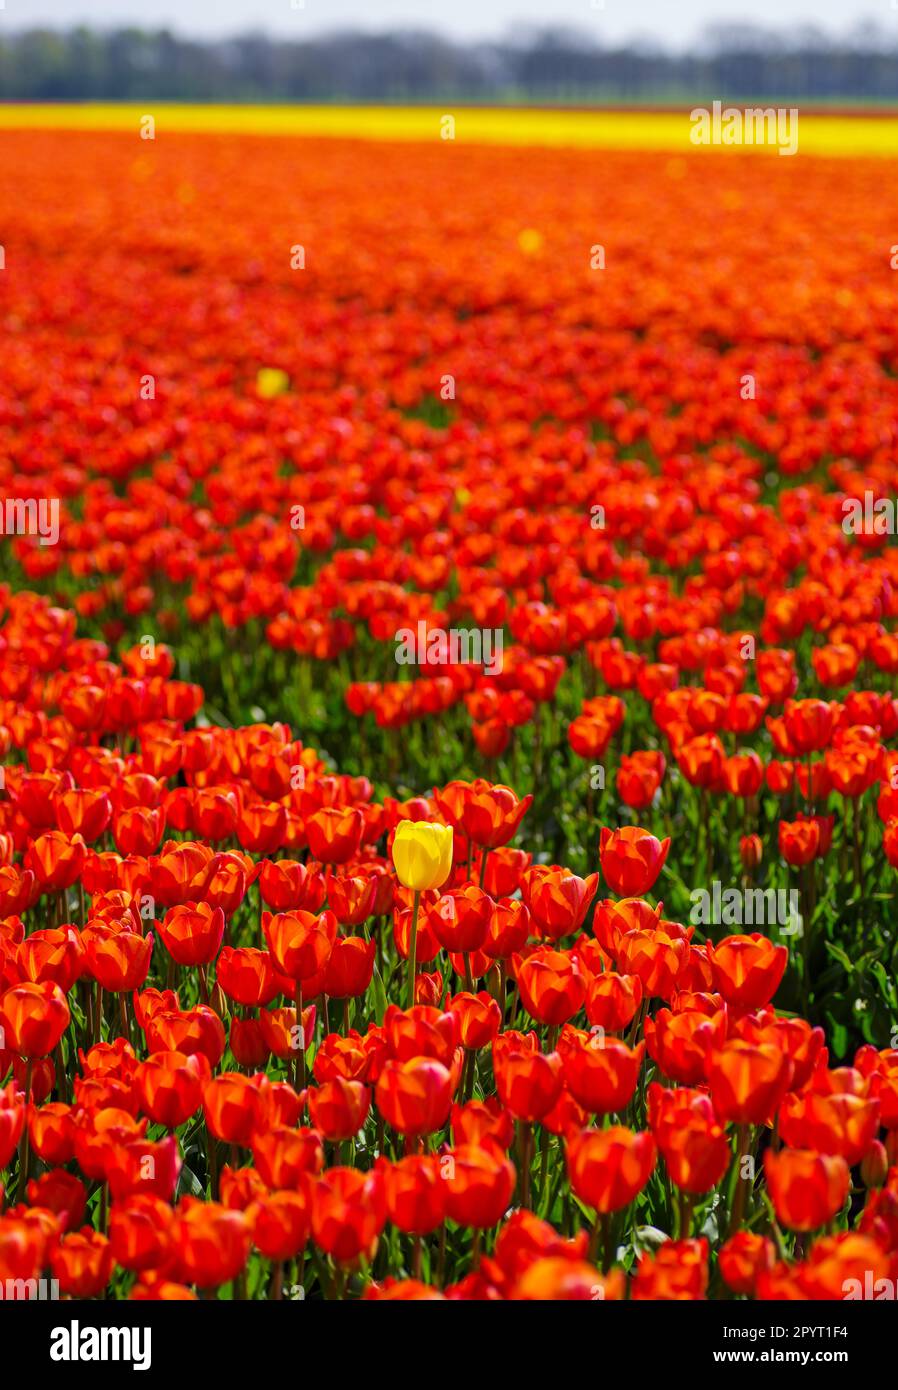 tulipe jaune simple dans un champ avec des tulipes rouges Banque D'Images